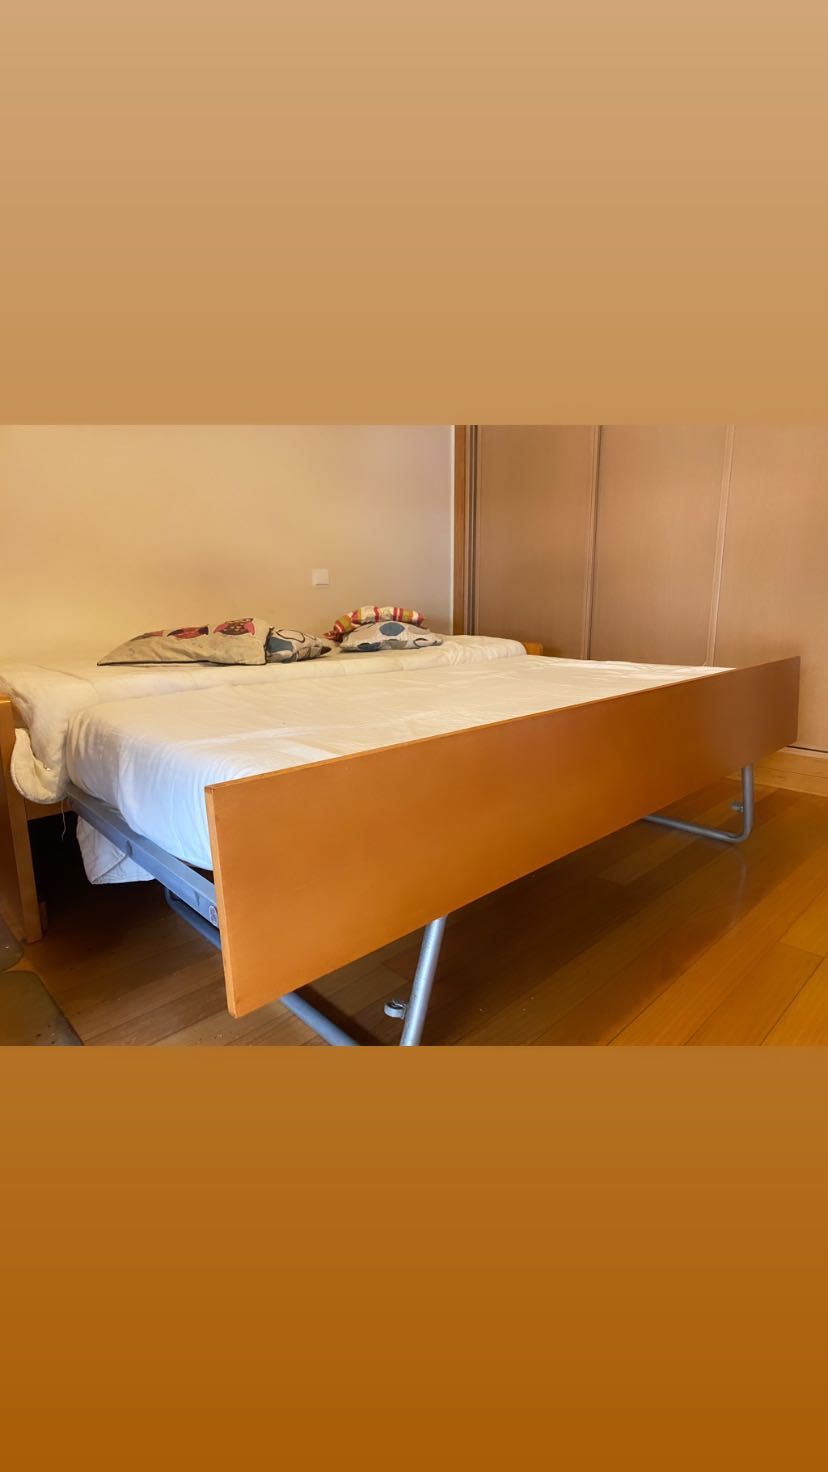 Conjunto de camas com gaveta (madeira)